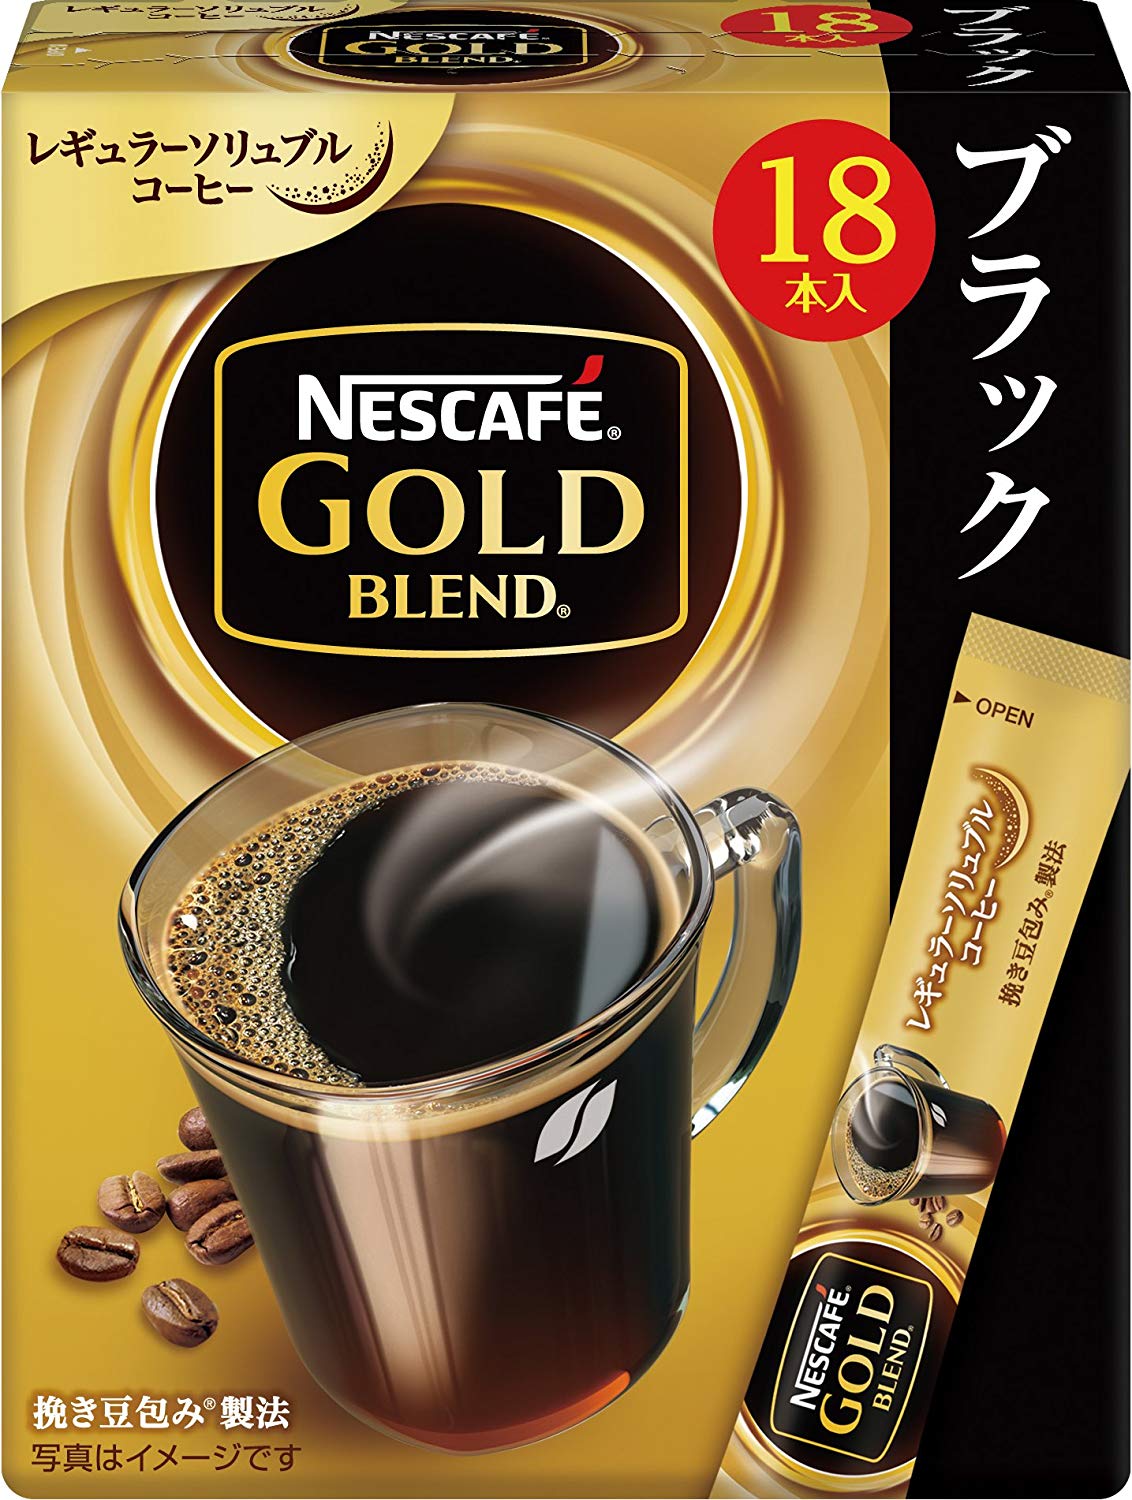 コーヒー本来の味や香りを楽しめる「ブラック」